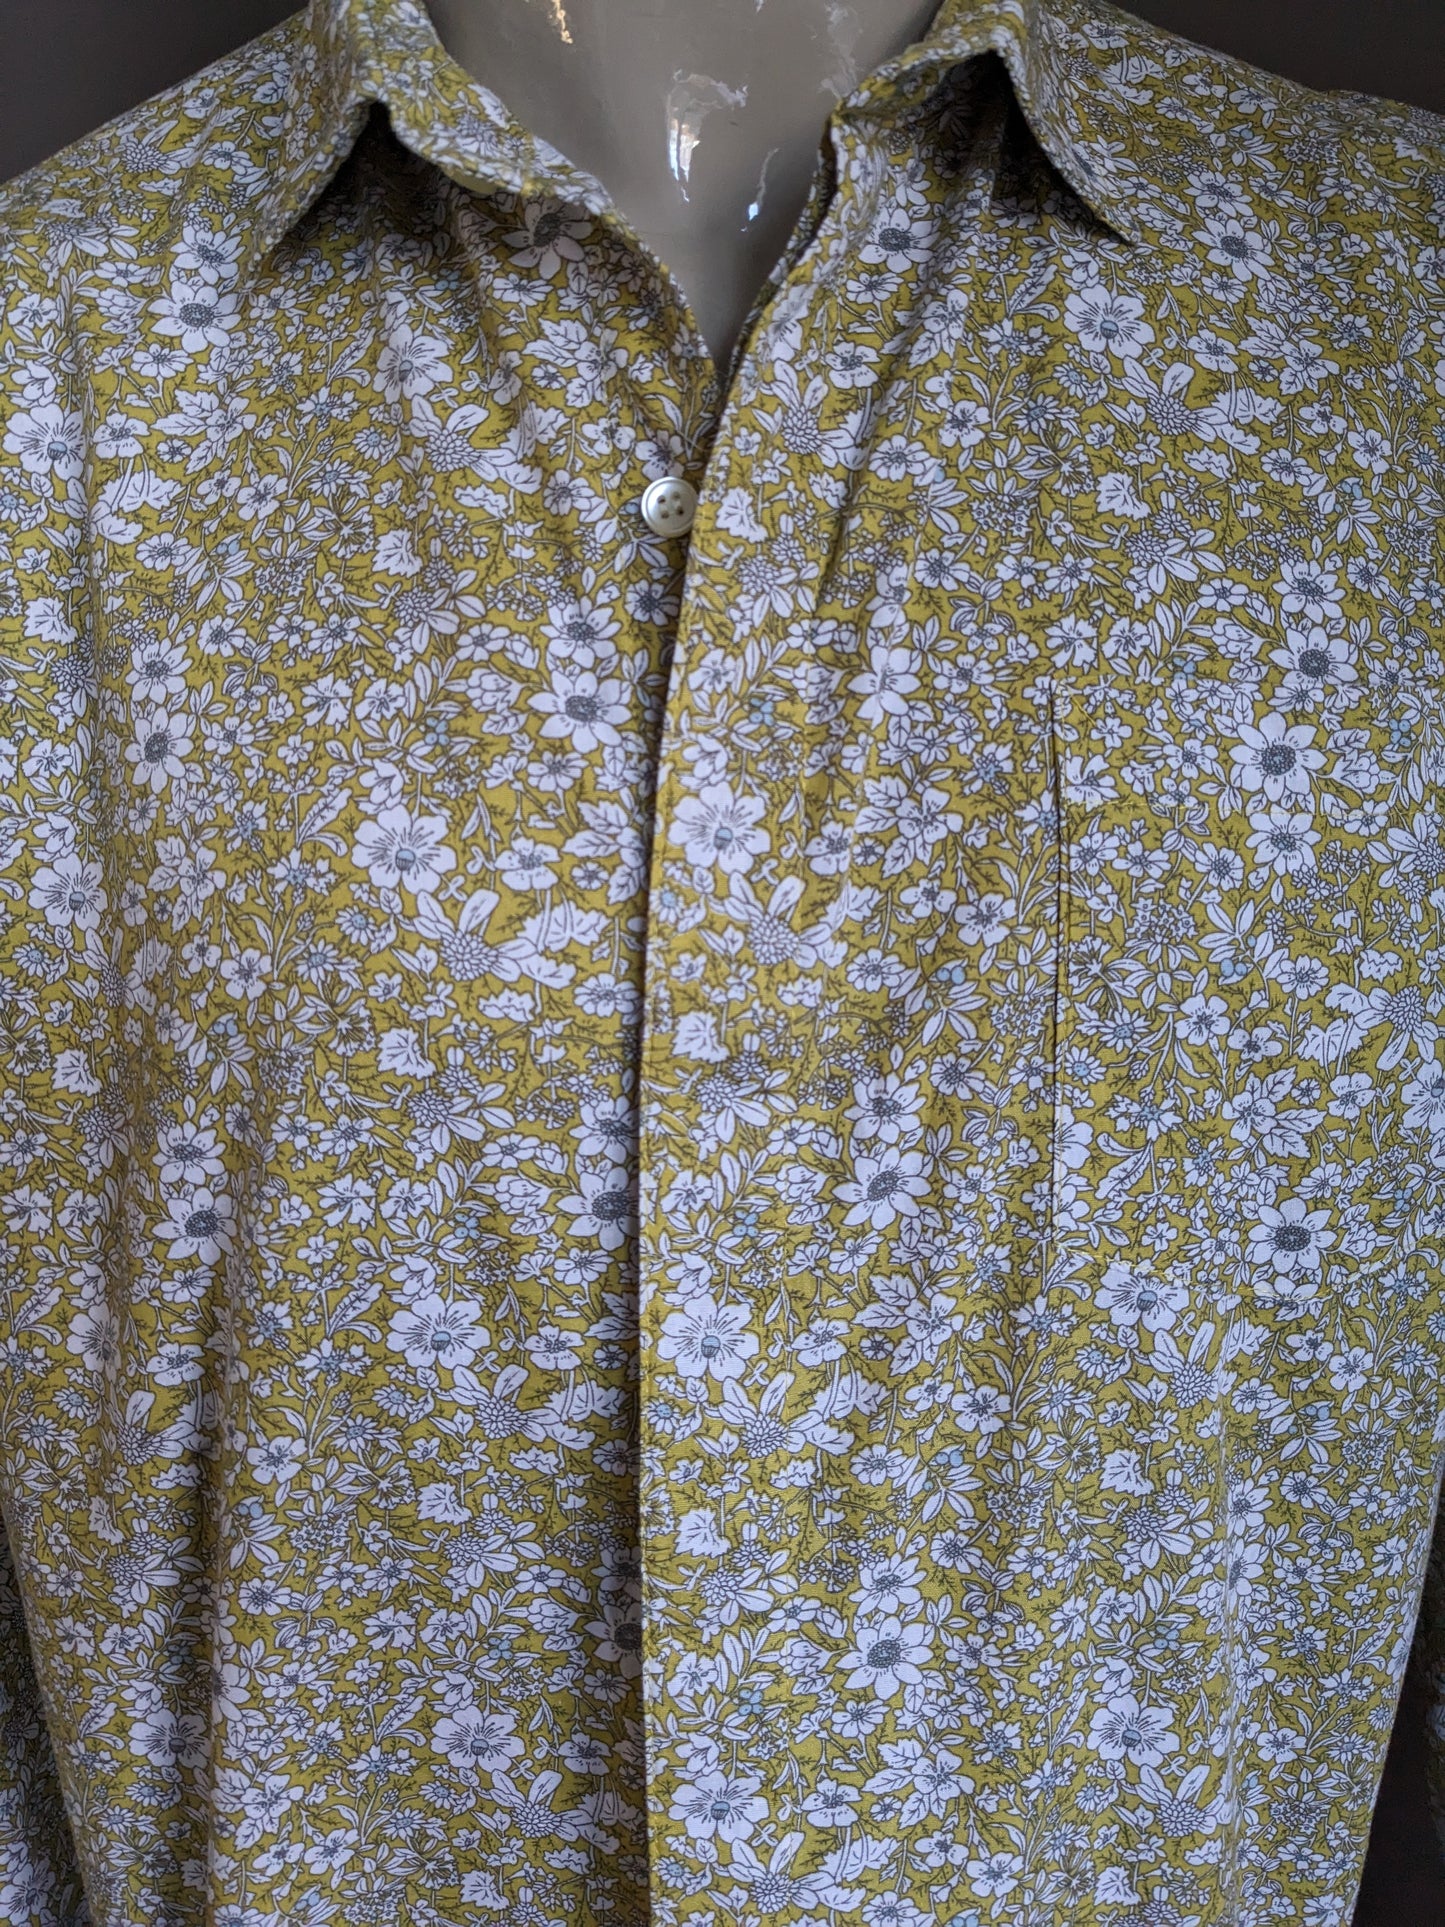 Merkloos print overhemd. Groen Wit Grijze bloemen print. Maat XL.